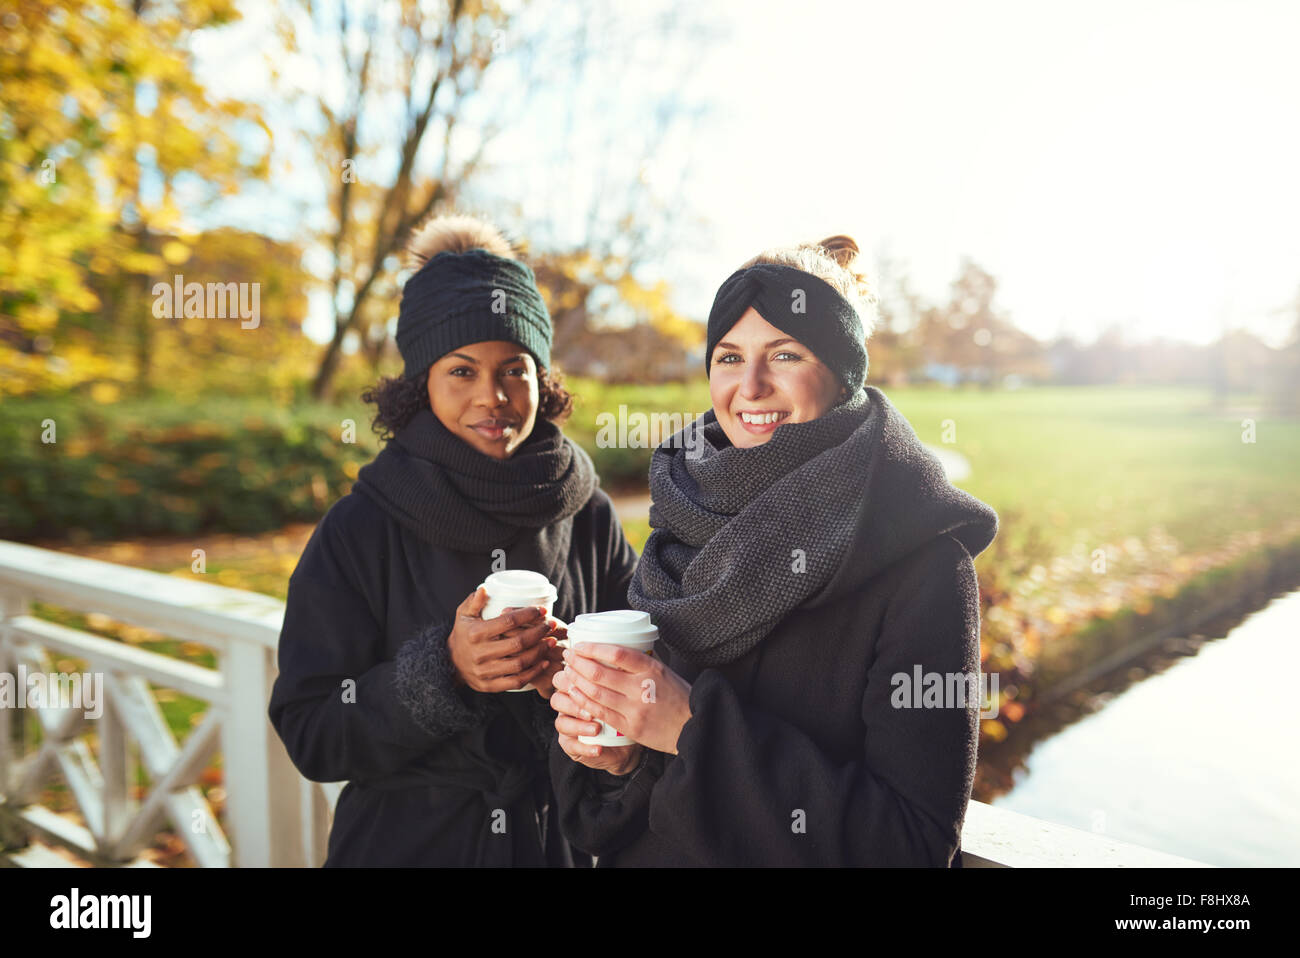 Zwei junge Frauen, die auf der Brücke und halten Kaffee trinken gehen, lächelnd Stockfoto